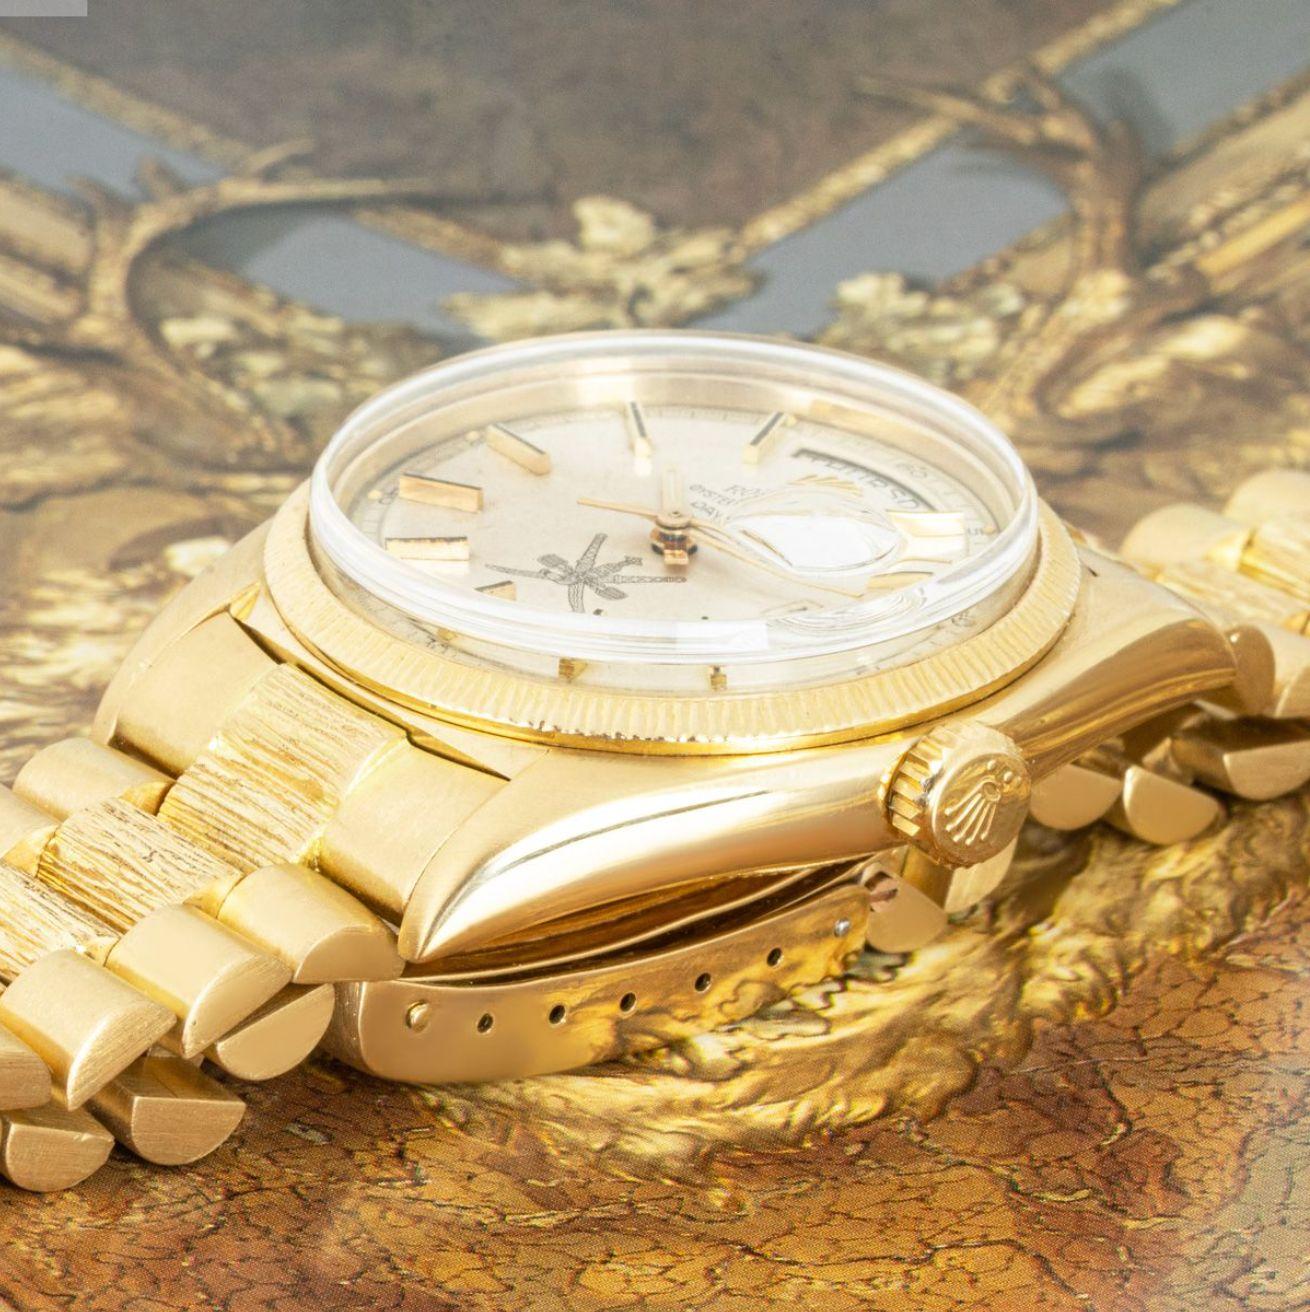 Montre-bracelet Day-Date en or jaune 18 carats de Rolex. Cadran argenté avec index appliqués, écusson omanais à 6 heures, représentant l'emblème national d'Oman, et lunette en or jaune.

Dotée d'un verre en plastique, d'un mouvement automatique à